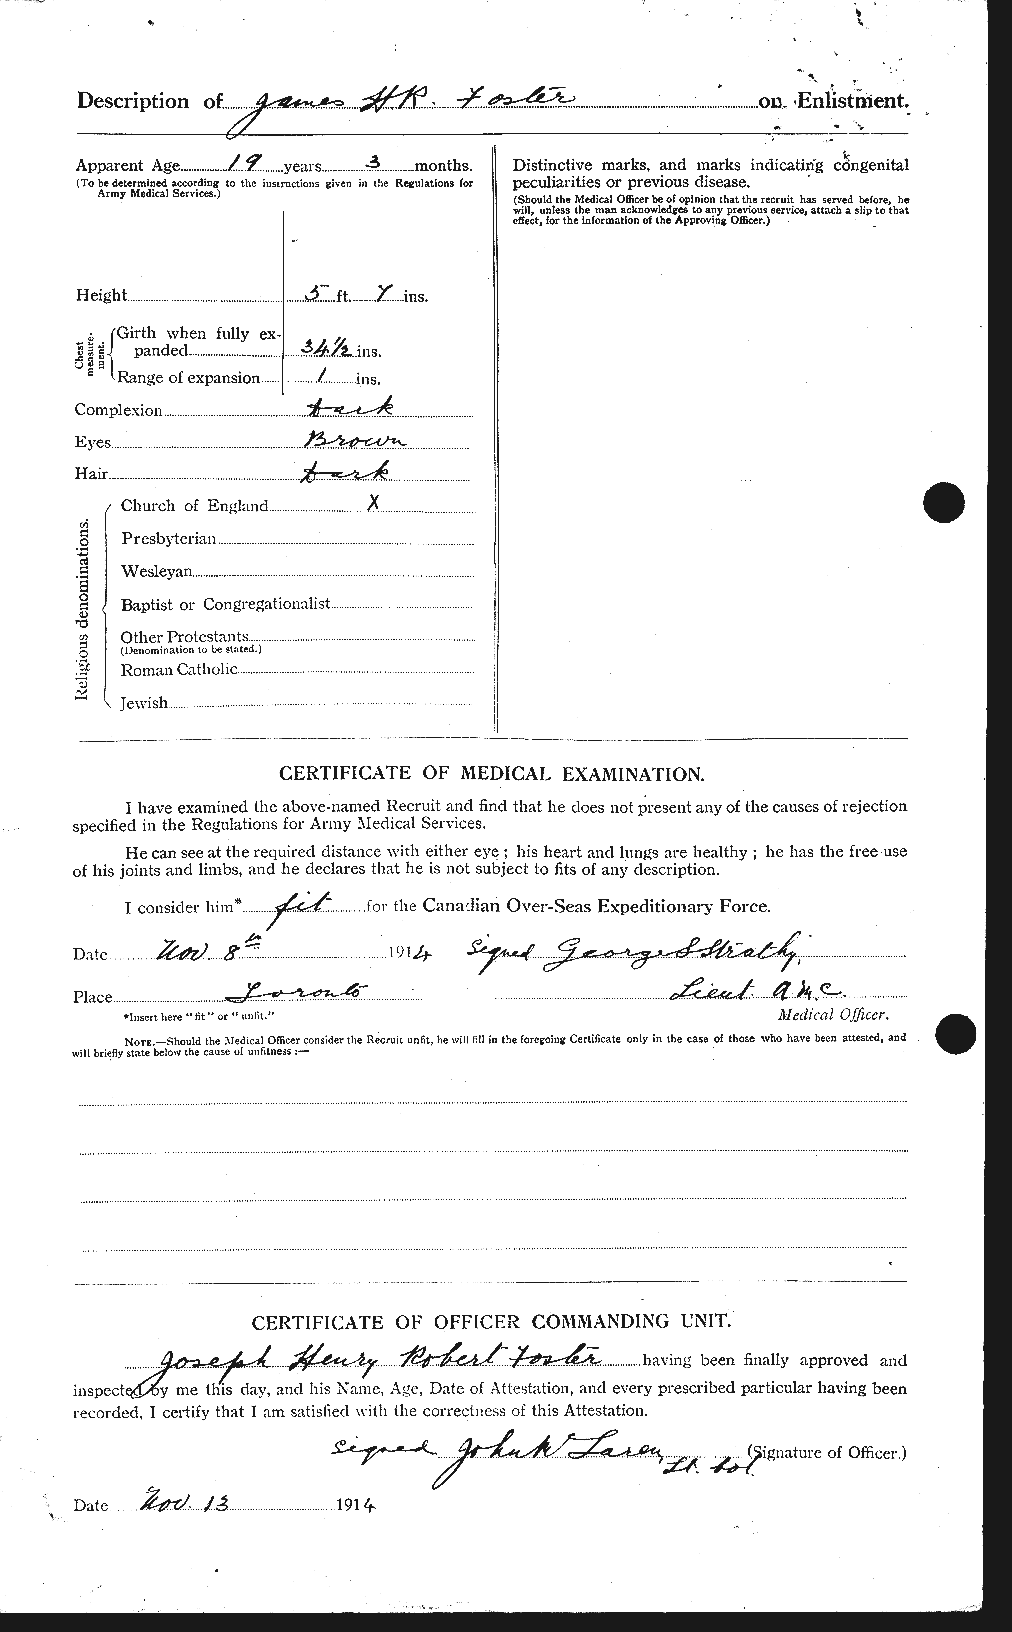 Dossiers du Personnel de la Première Guerre mondiale - CEC 333307b